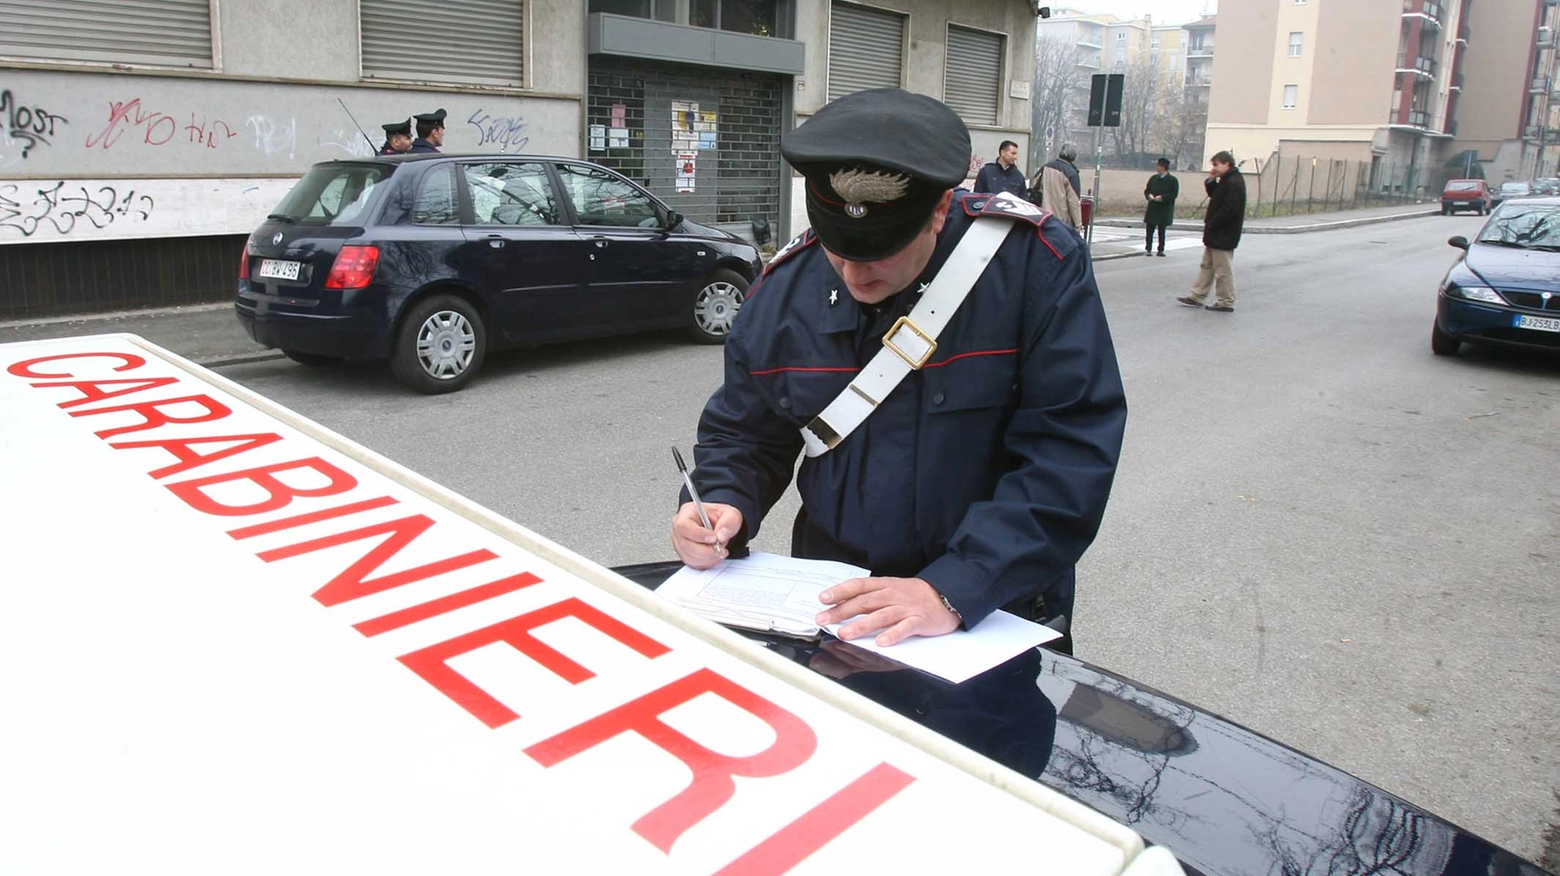 Carabinieri al lavoro: hanno arrestato loro stessi il collega infedele